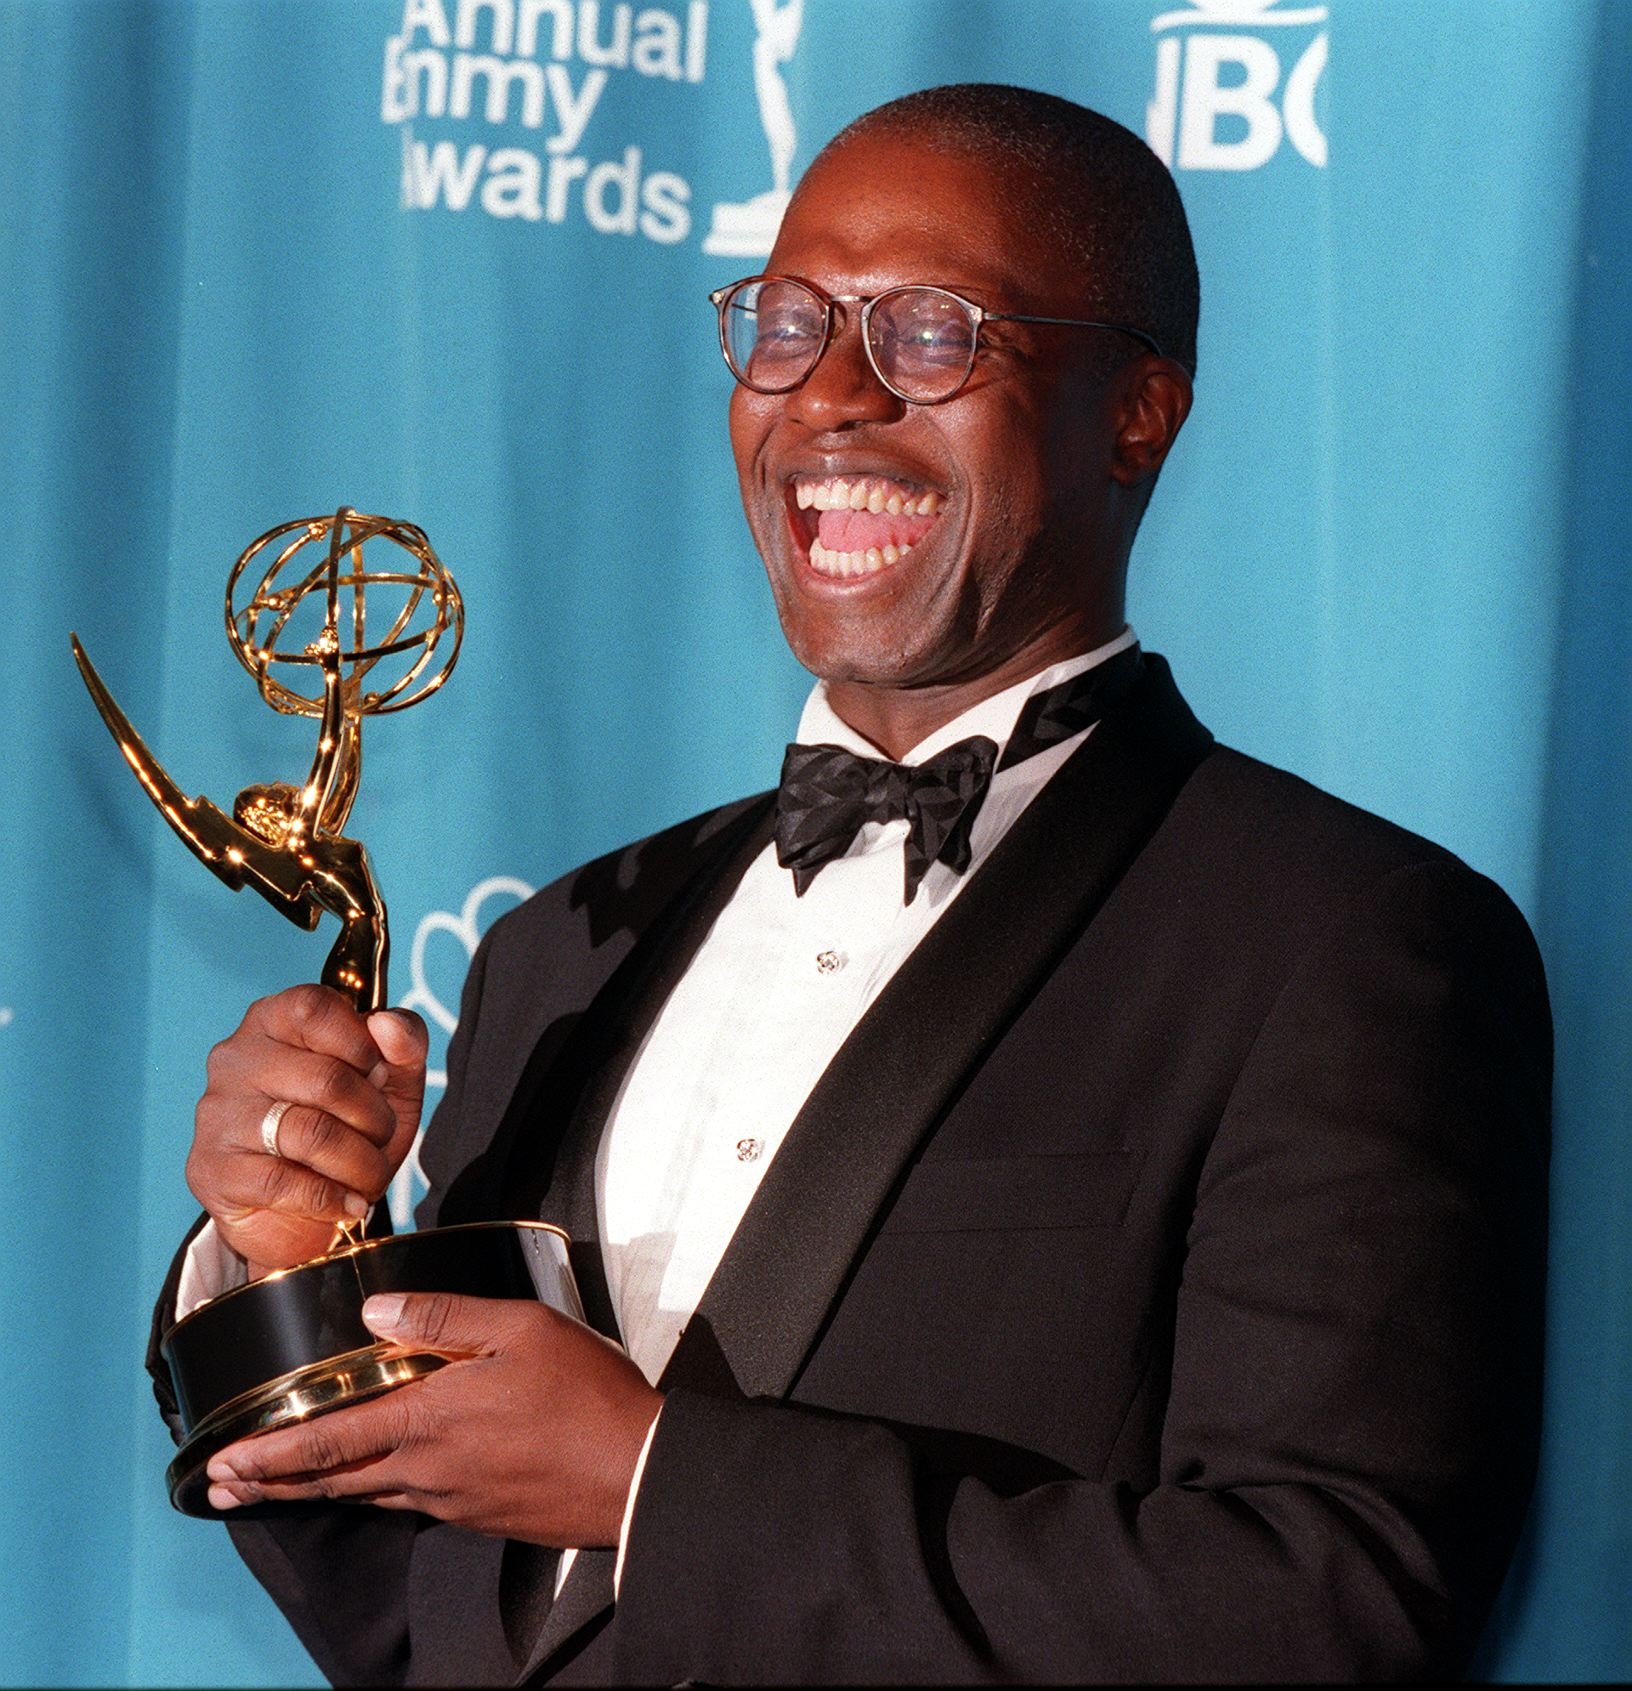 Der Star gewann einen Emmy für seine Arbeit an Homicide: Life on the Street